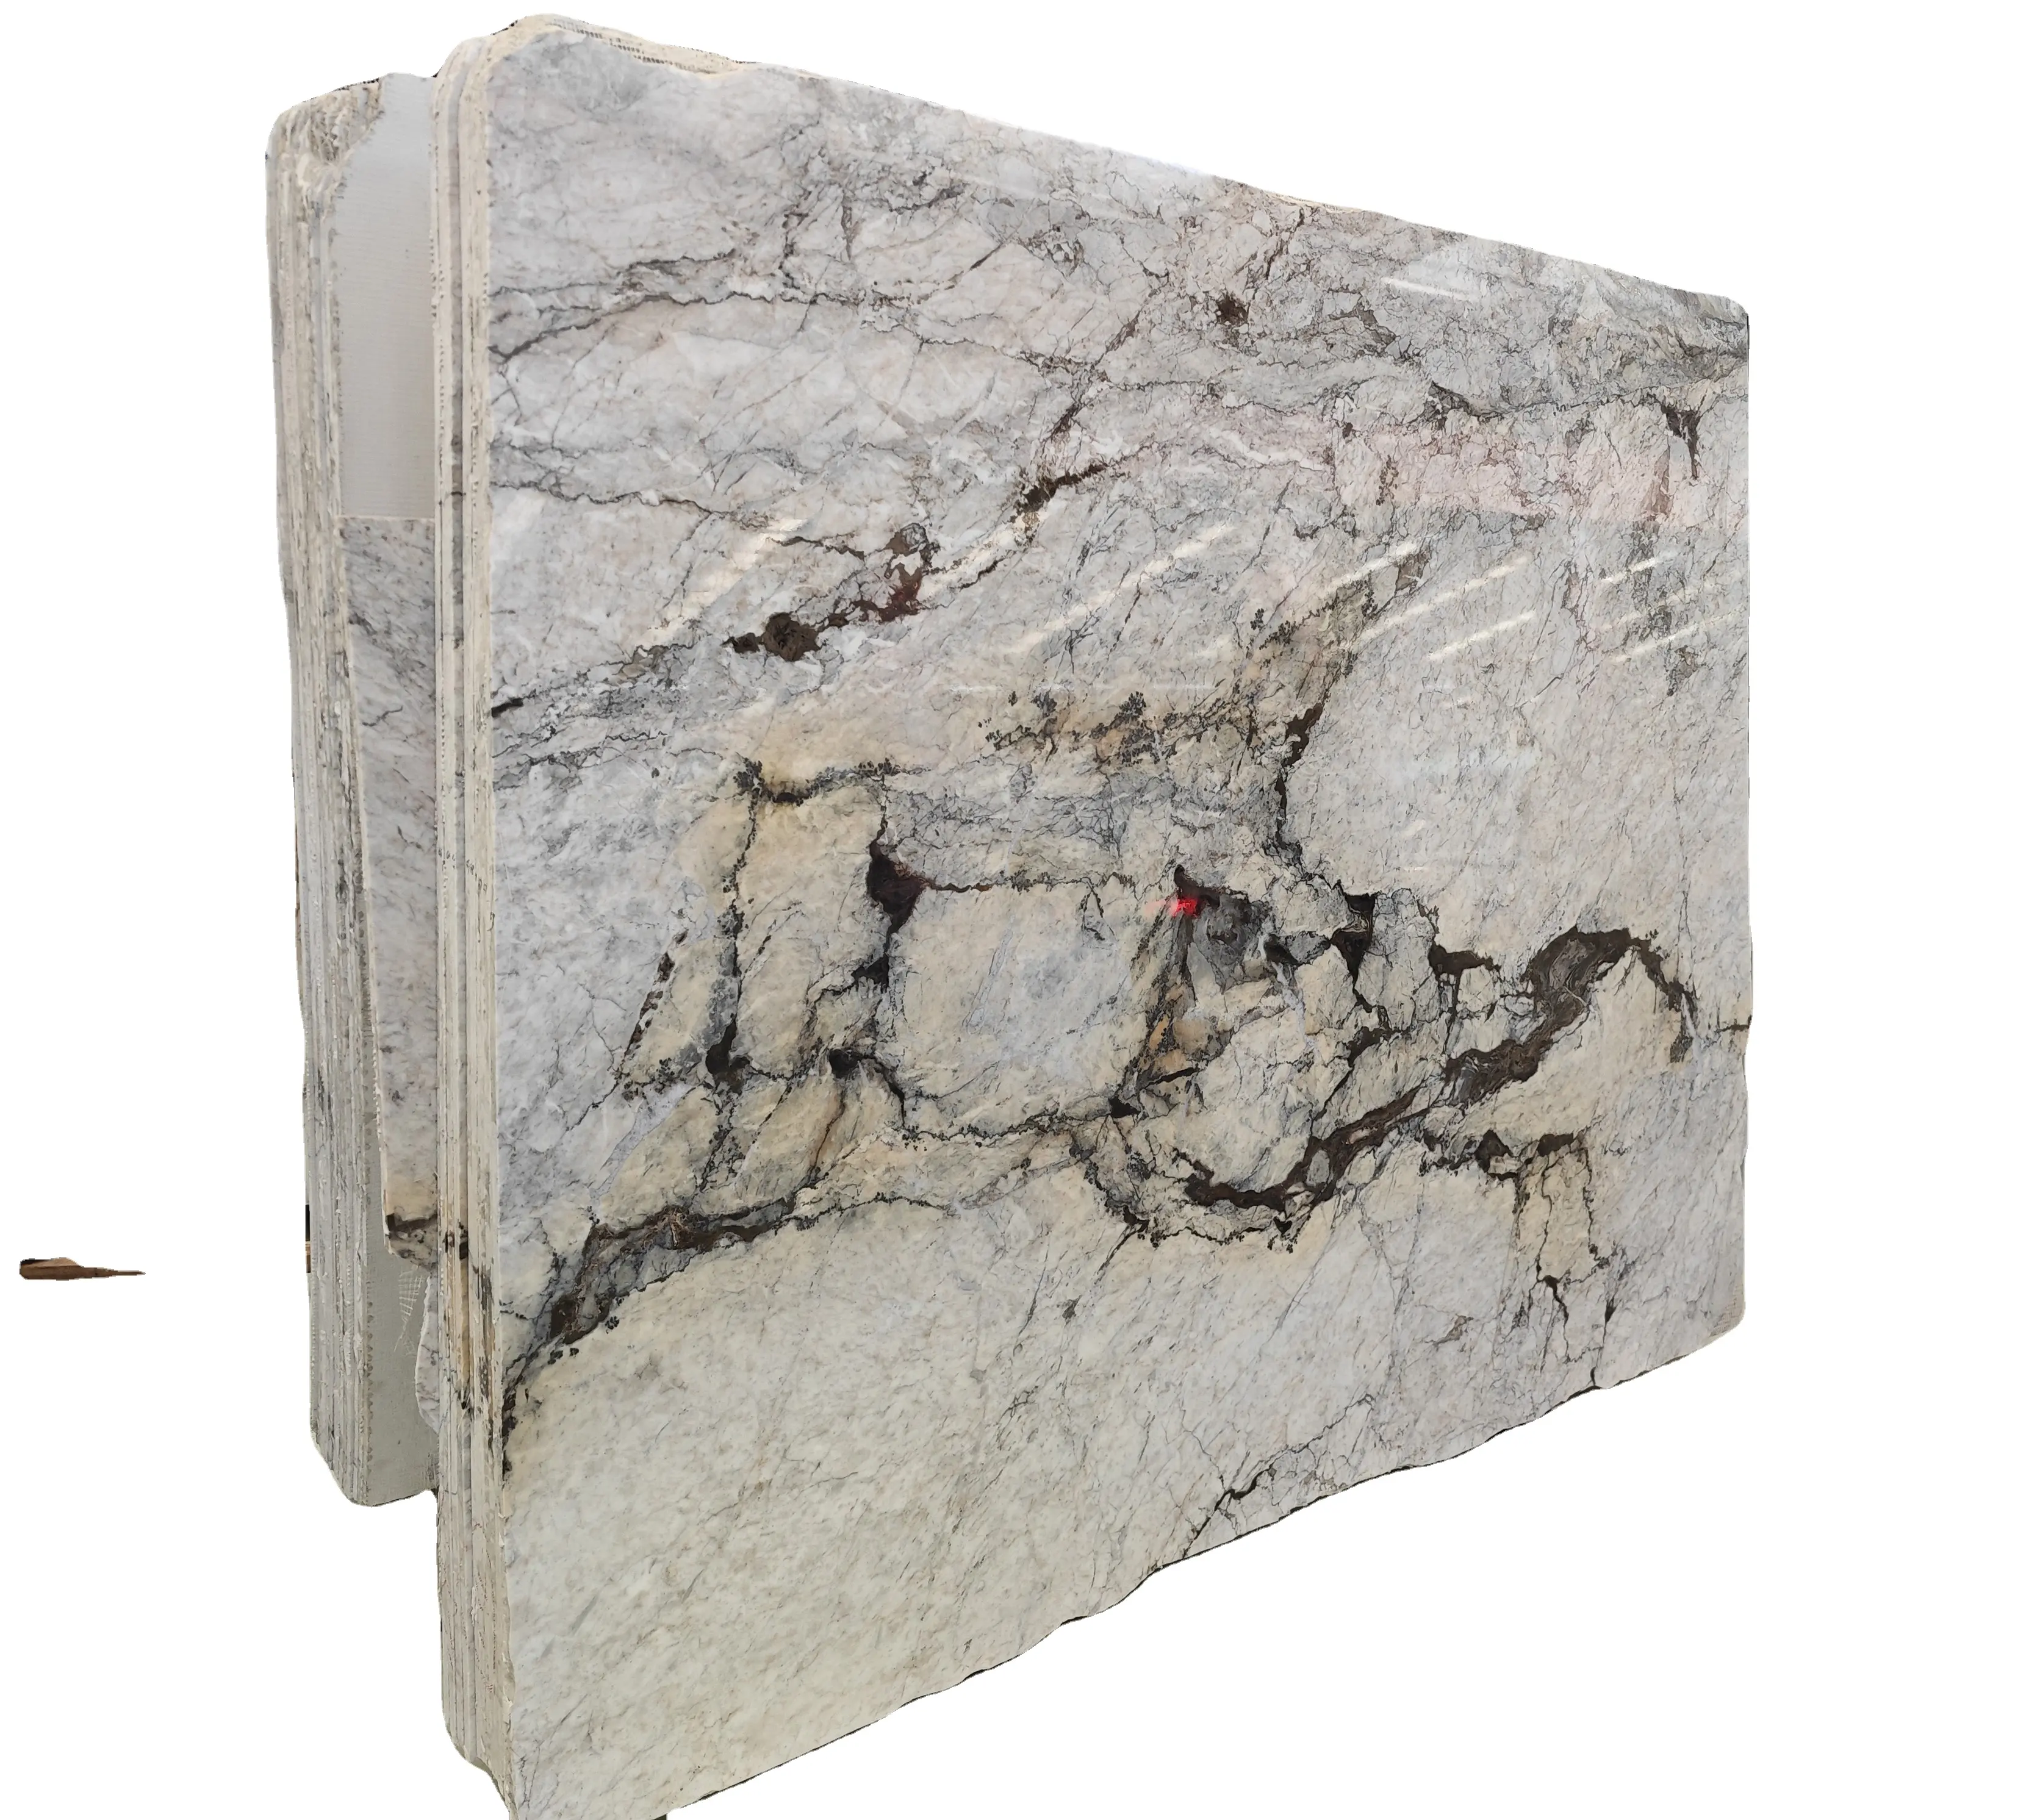 Di lusso brasiliano Blanco granito vendita a caldo grossista pietra naturale per pareti di accento e controsoffitti durevoli